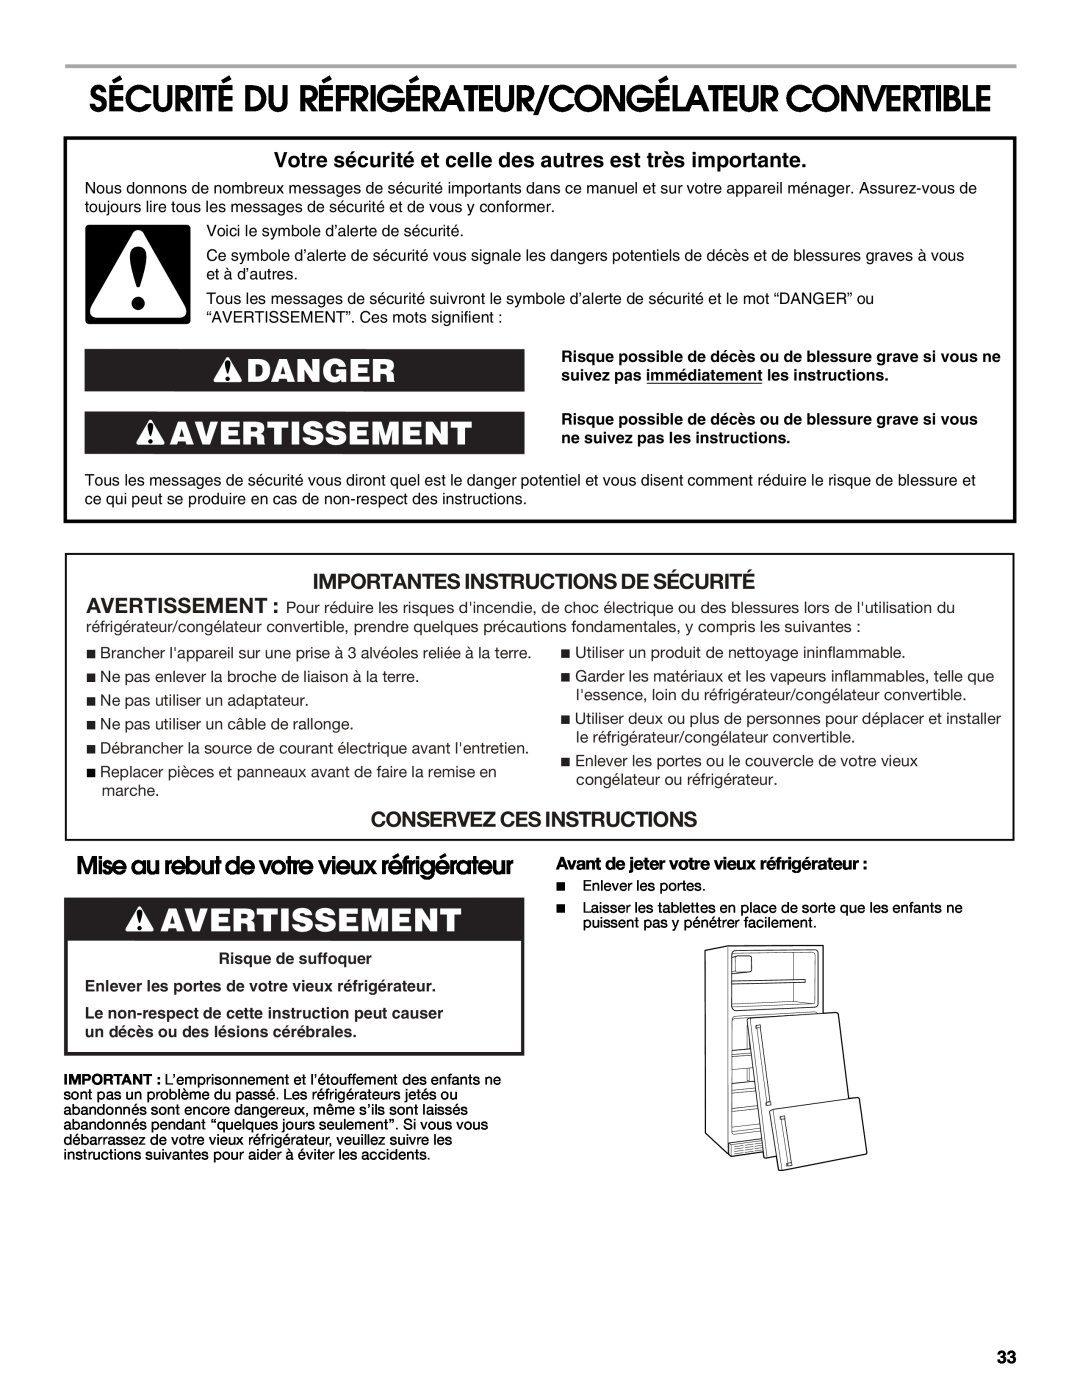 Whirlpool 2314466 Sécurité Du Réfrigérateur/Congélateur Convertible, Danger Avertissement, Conservez Ces Instructions 